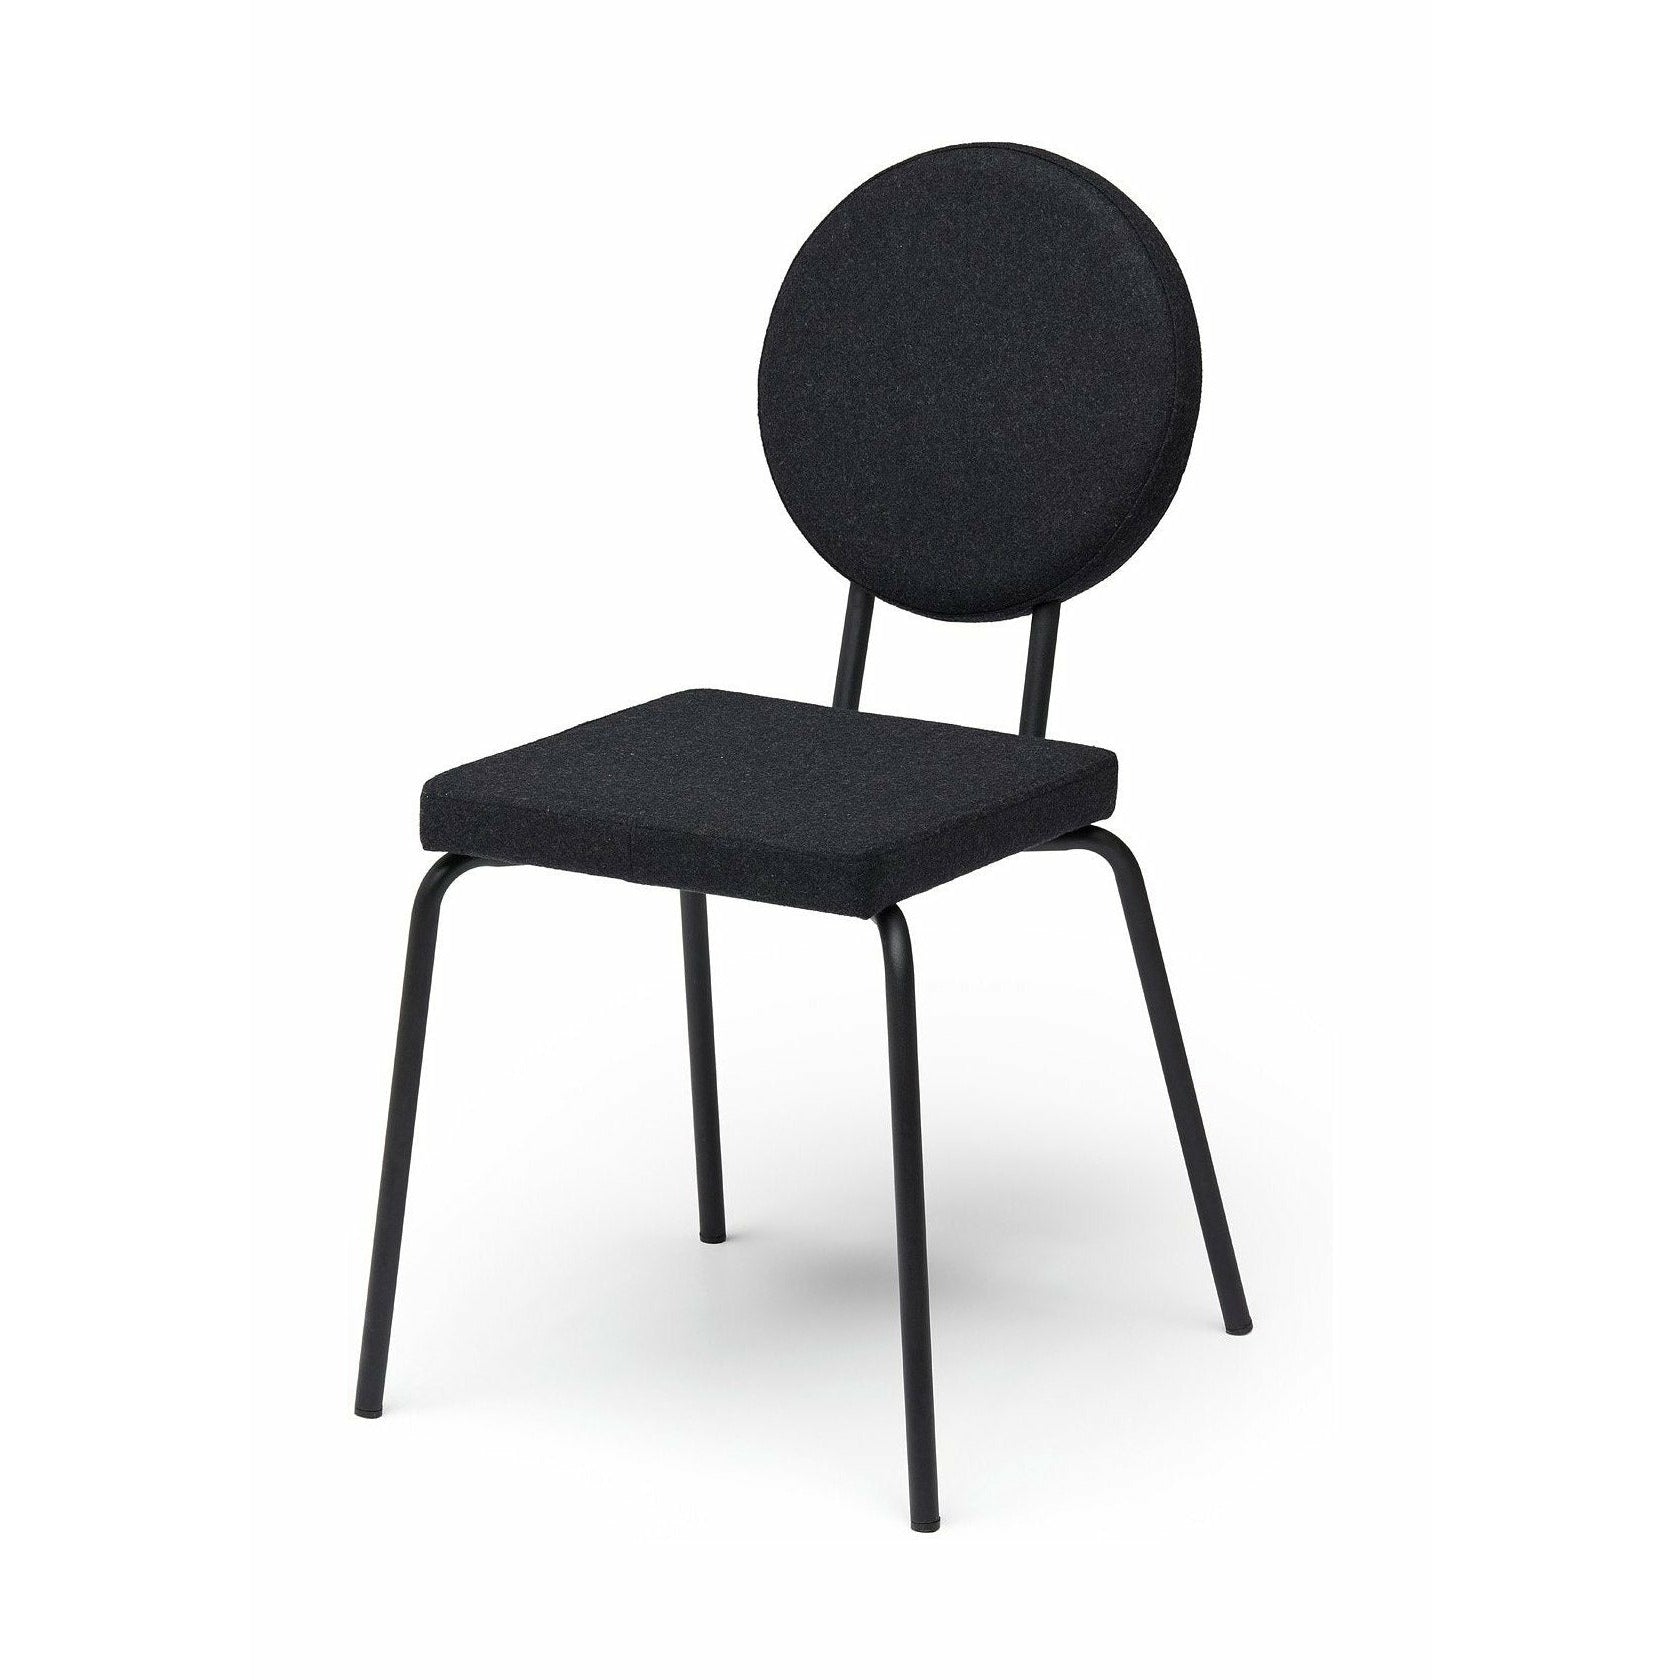 Puik Option chaise siège carré / dossier round, noir